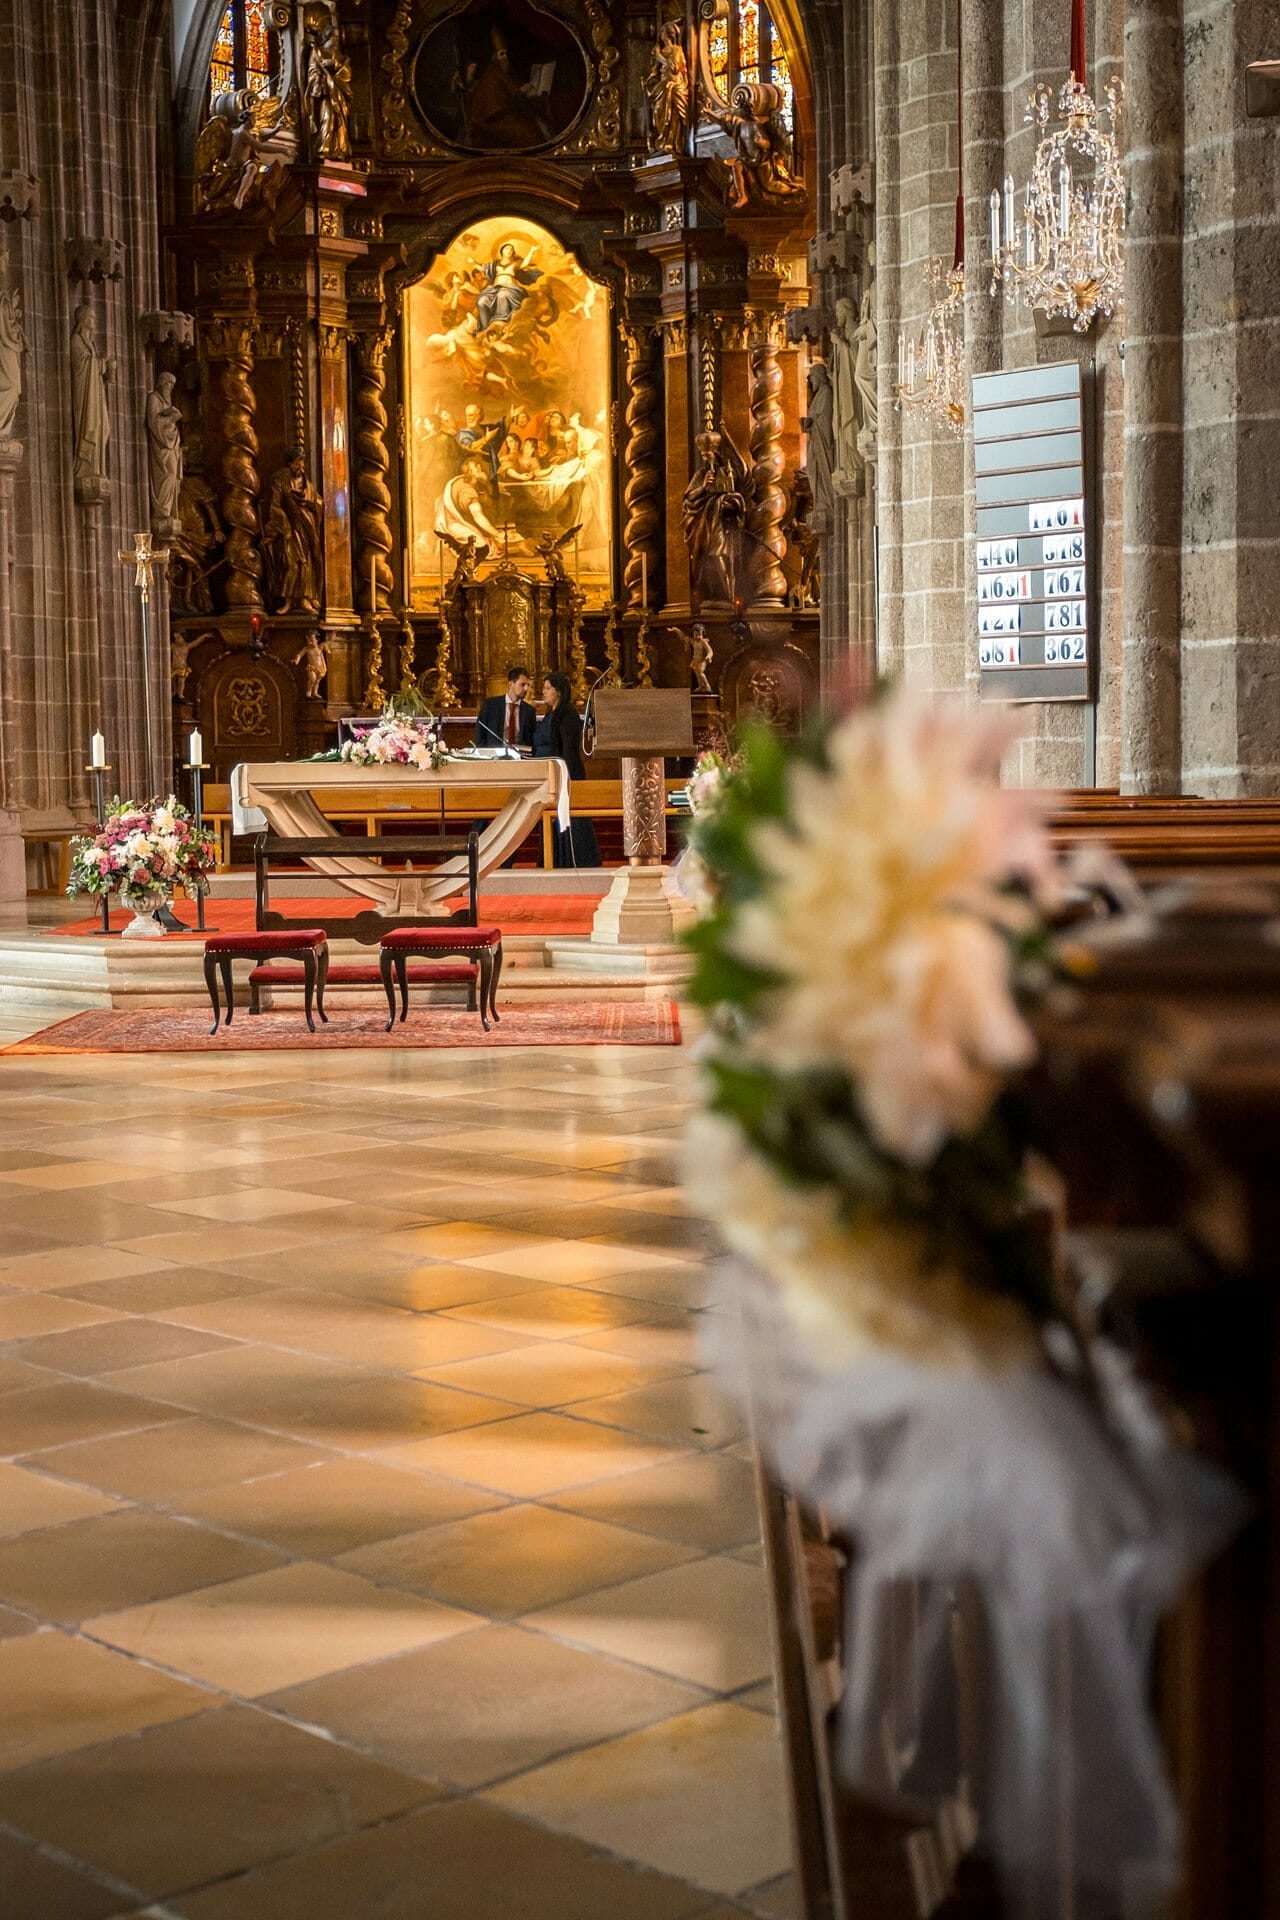 Eine Hochzeitszeremonie in einer Kirche mit Blumen auf den Kirchenbänken.